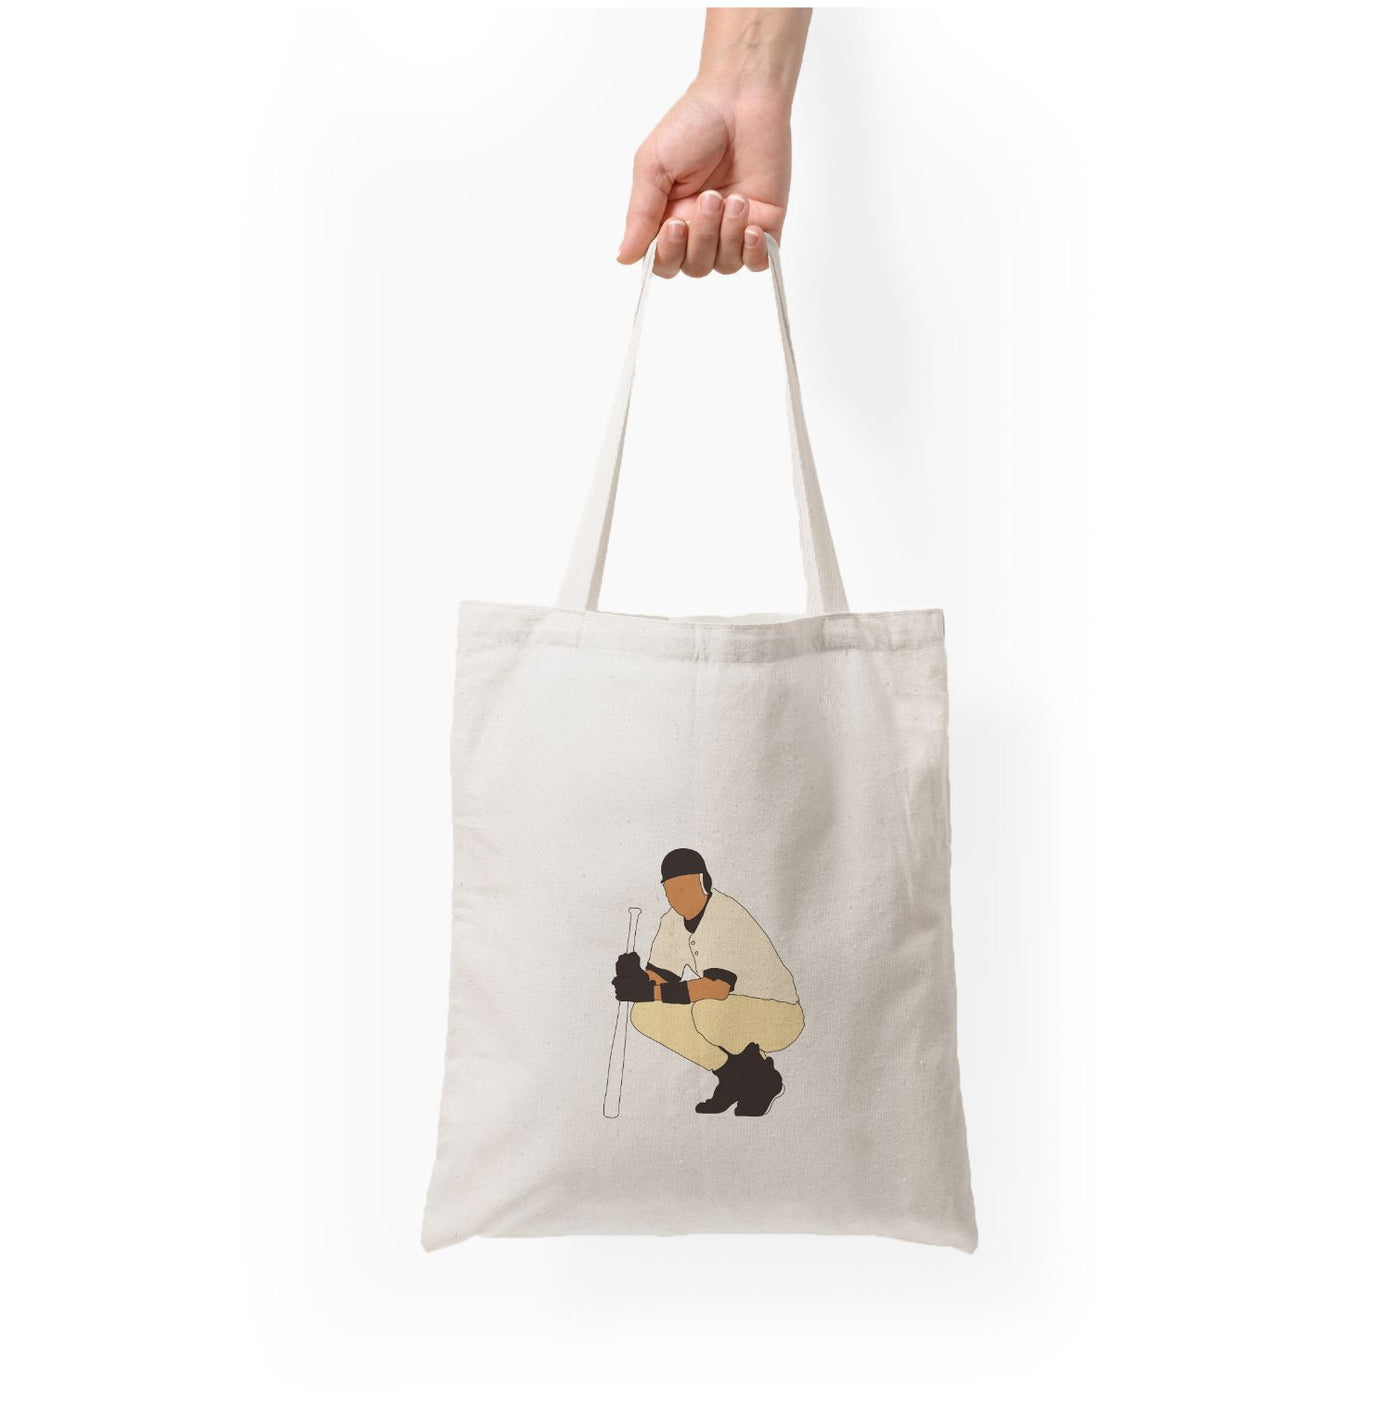 Derek Jeter - Baseball Tote Bag